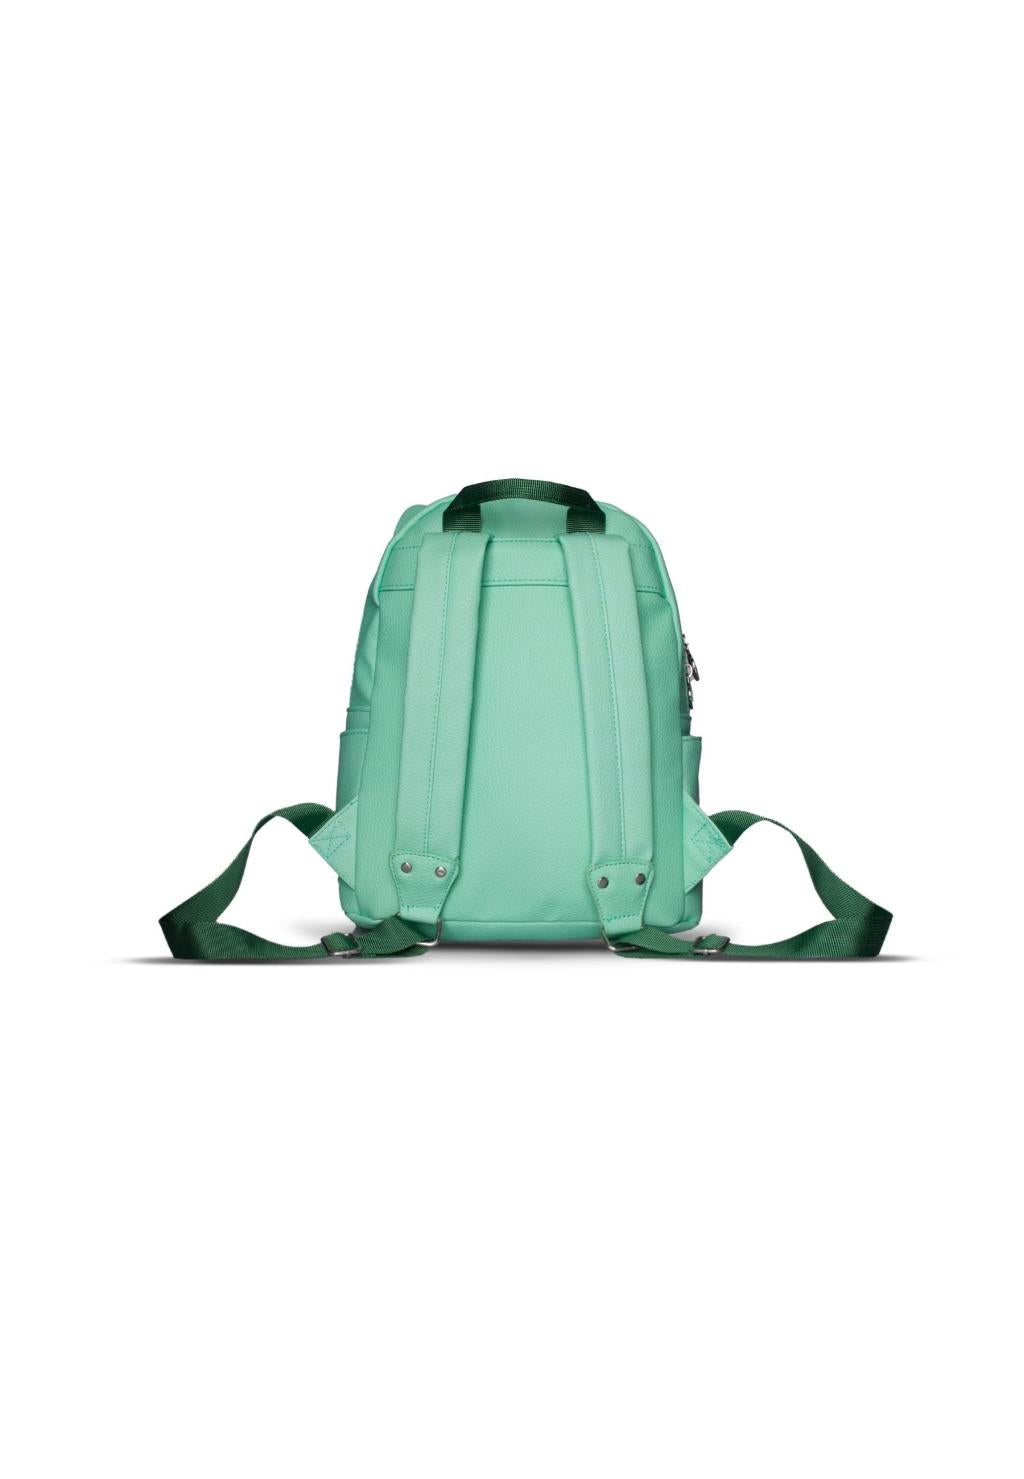 POKEMON - Bulbasaur - Heady - Backpack Novelty '26x20x12cm'